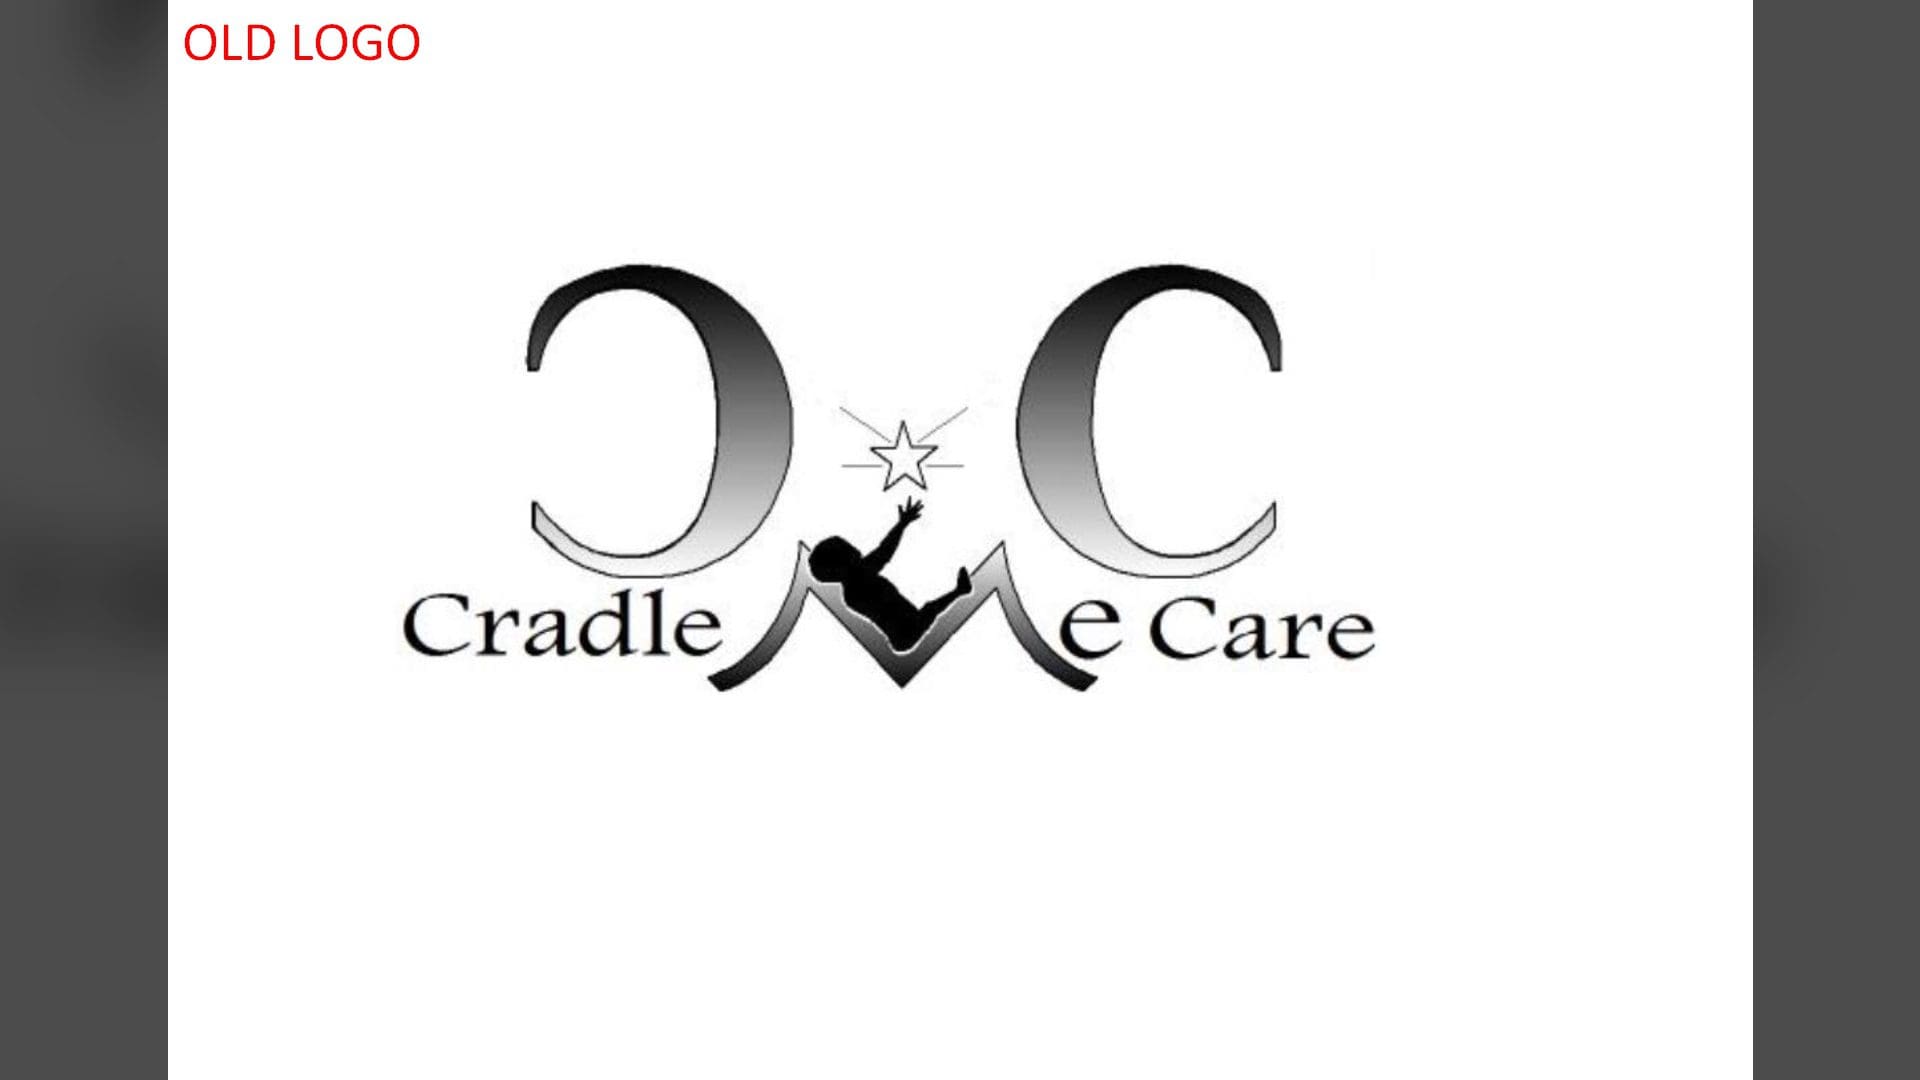 Cradle Me Care - Rebranding (5)